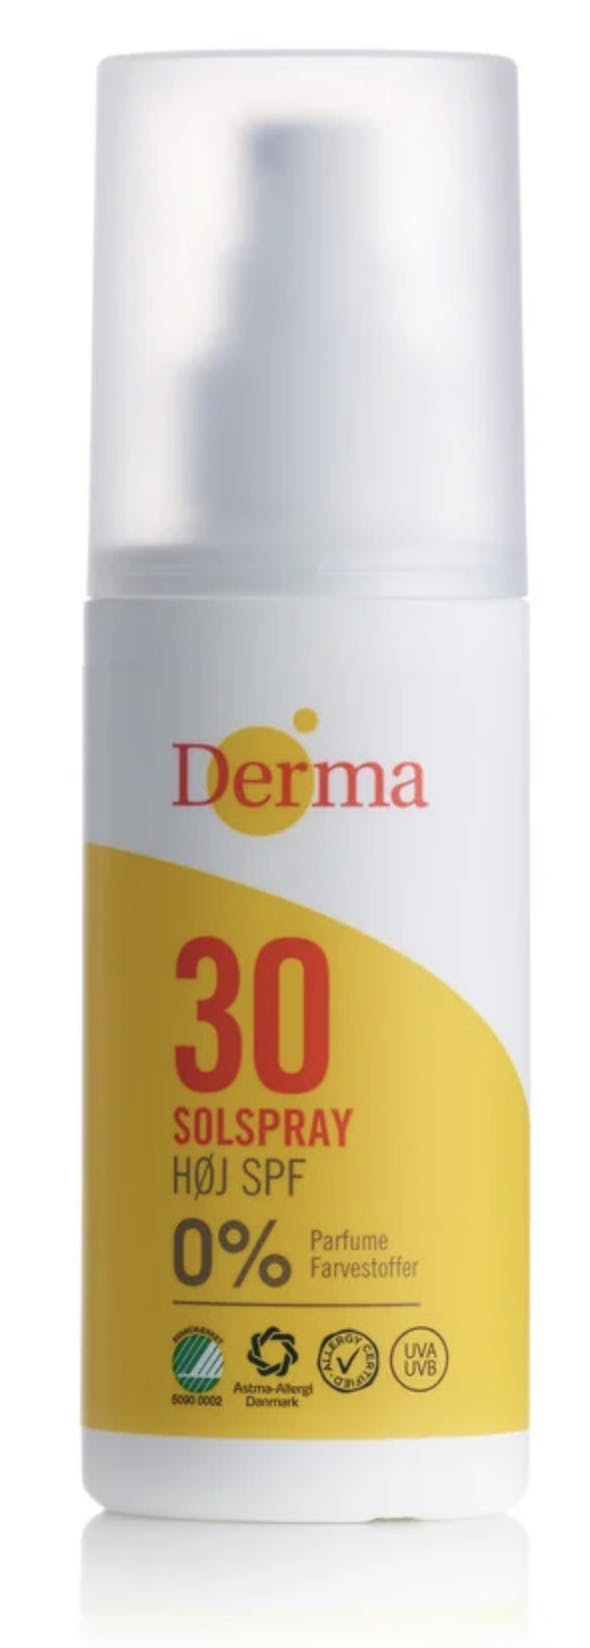 Derma Sun Sunspray SPF 30 150 ml